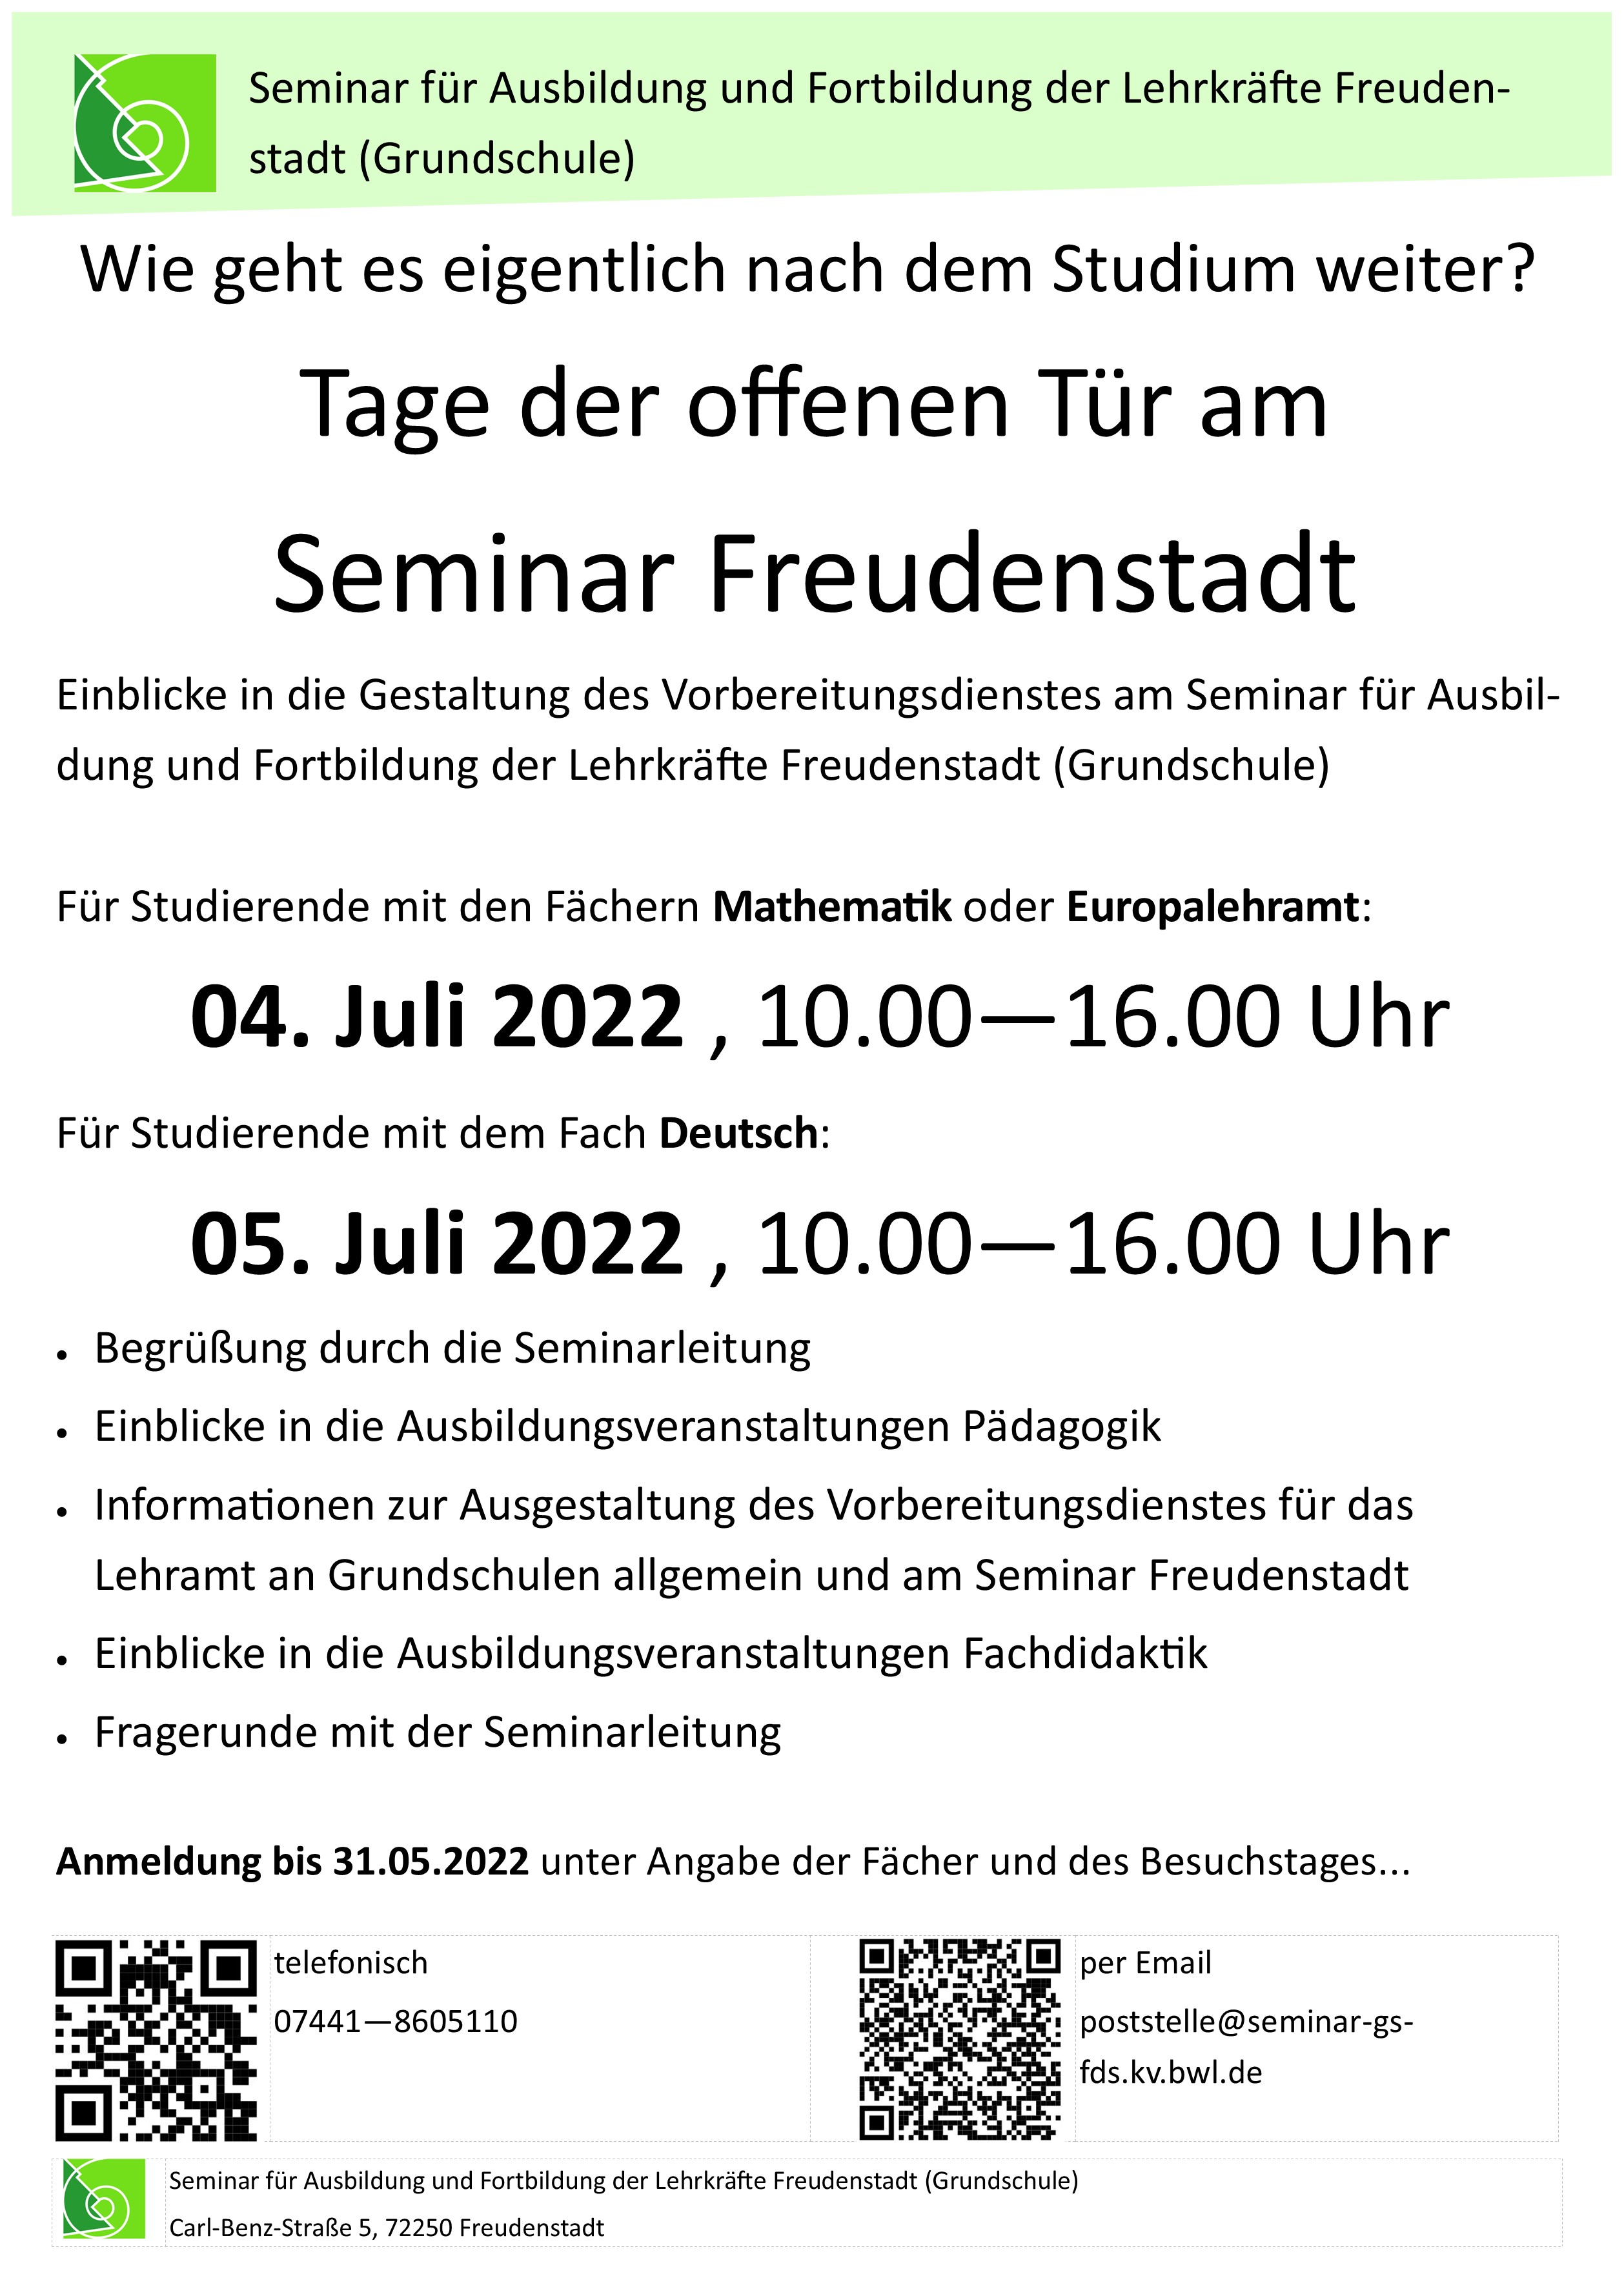 Plakat zum Tag der offenen Tür am Seminar Freudenstadt